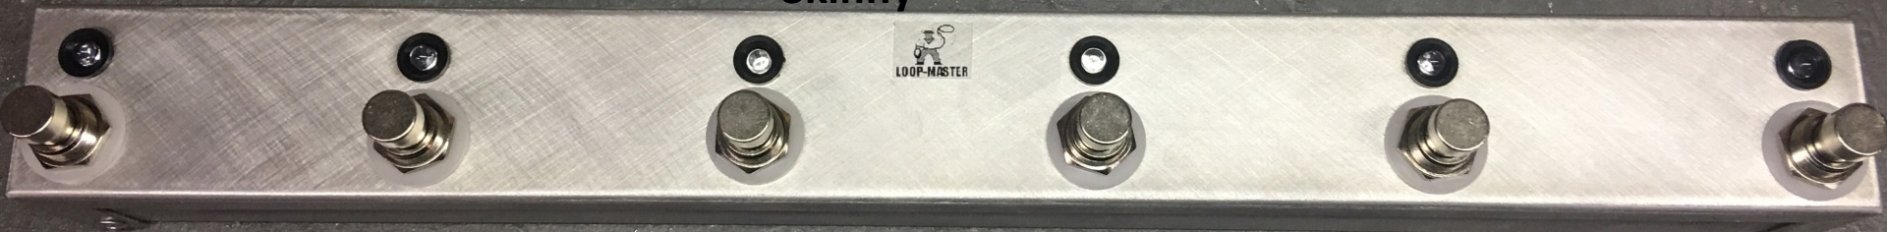 Pedals Module Skinny Looper 6 from Loop-Master